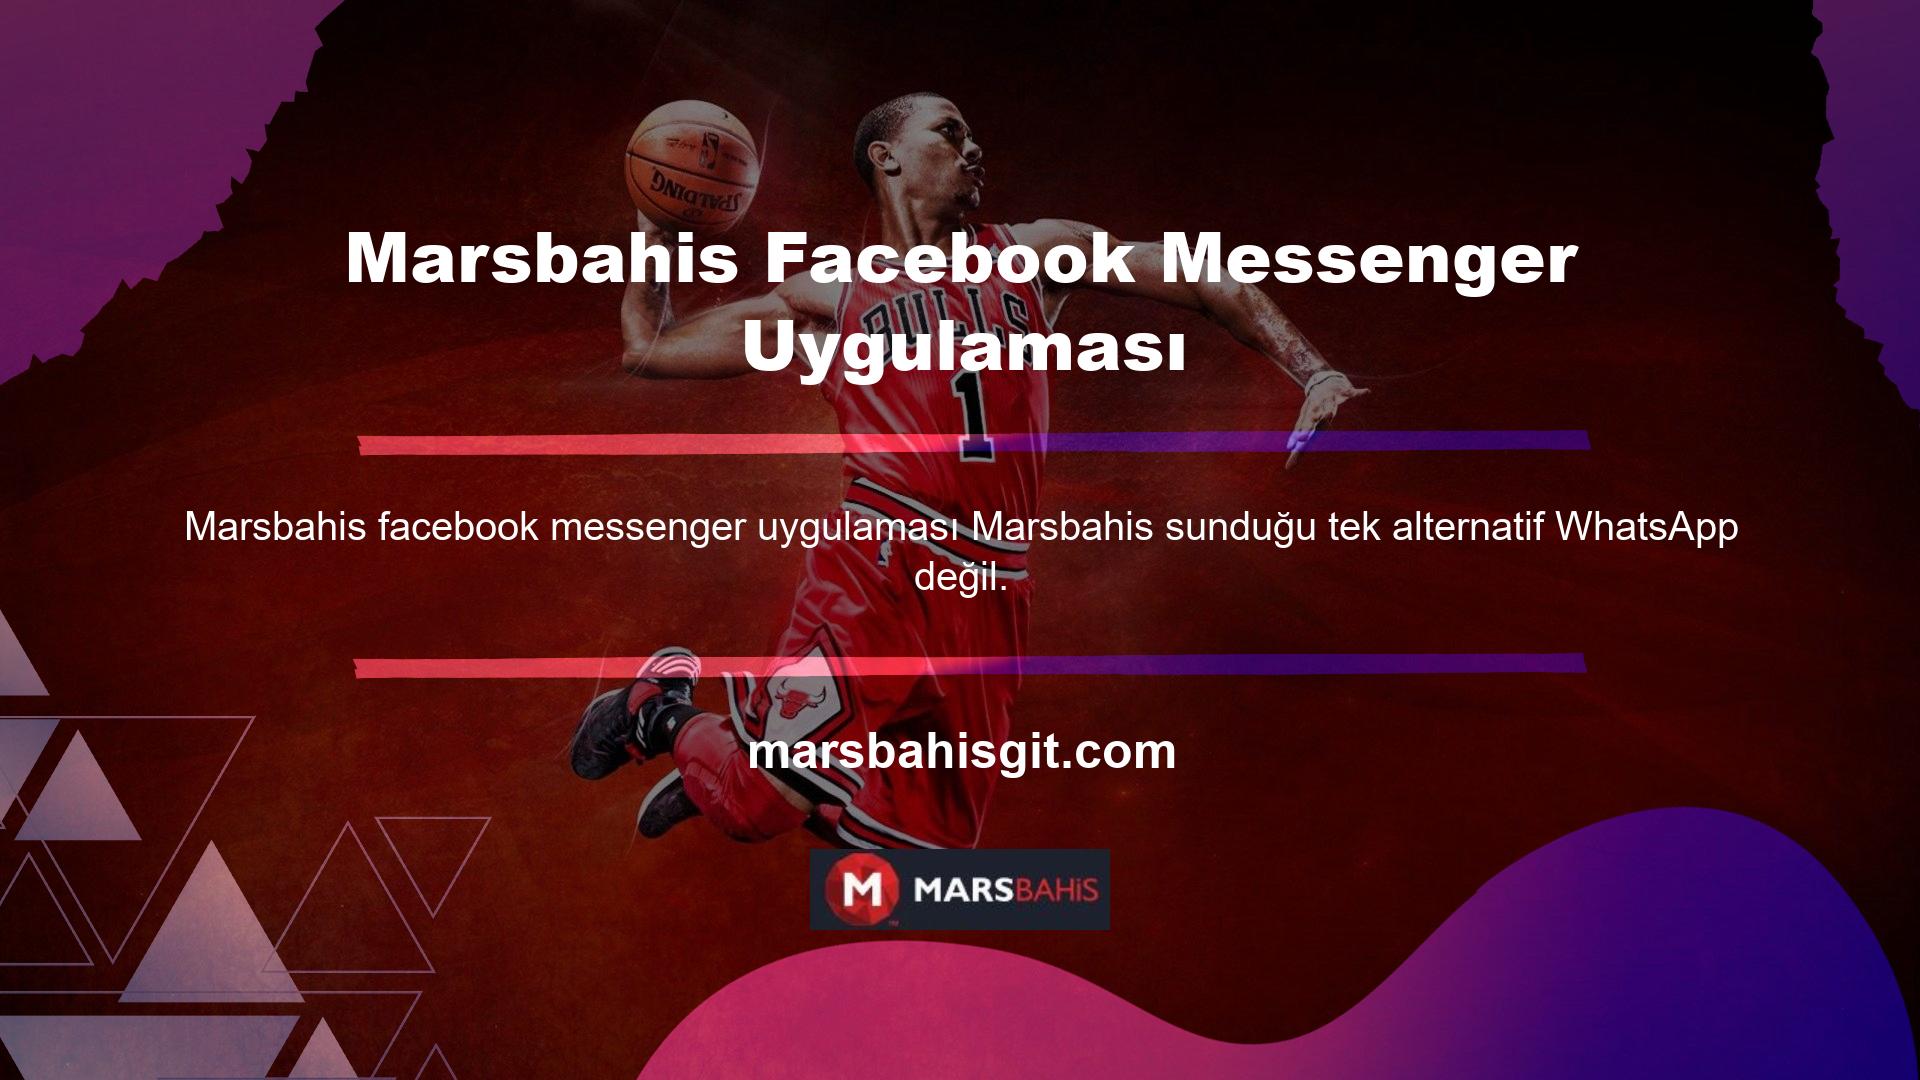 Marsbahis Facebook Messenger uygulaması da çok popüler